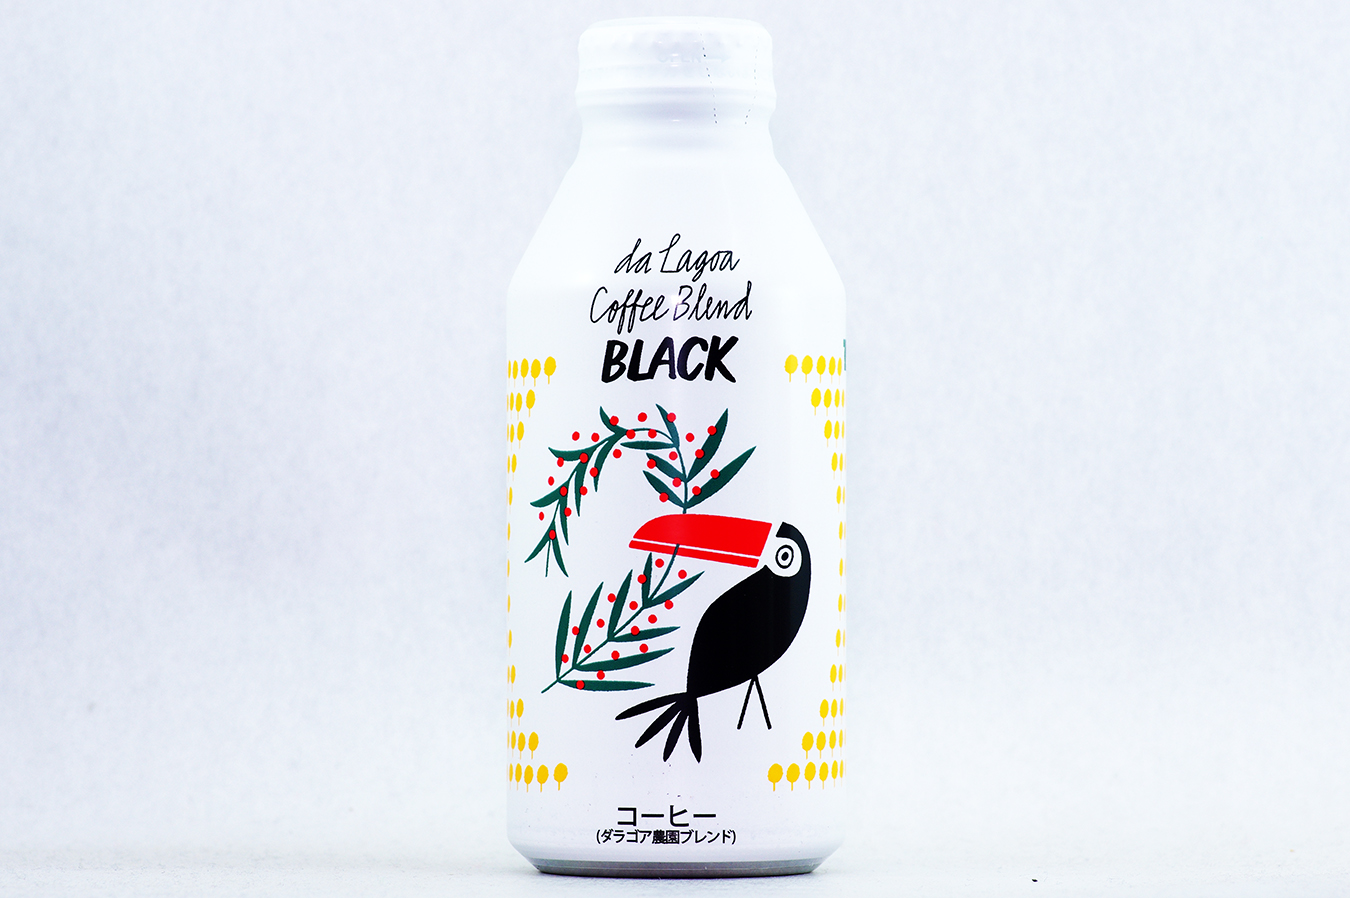 ダラゴア農園ブレンド ブラックコーヒー ボトル缶 375g 1 2018年2月